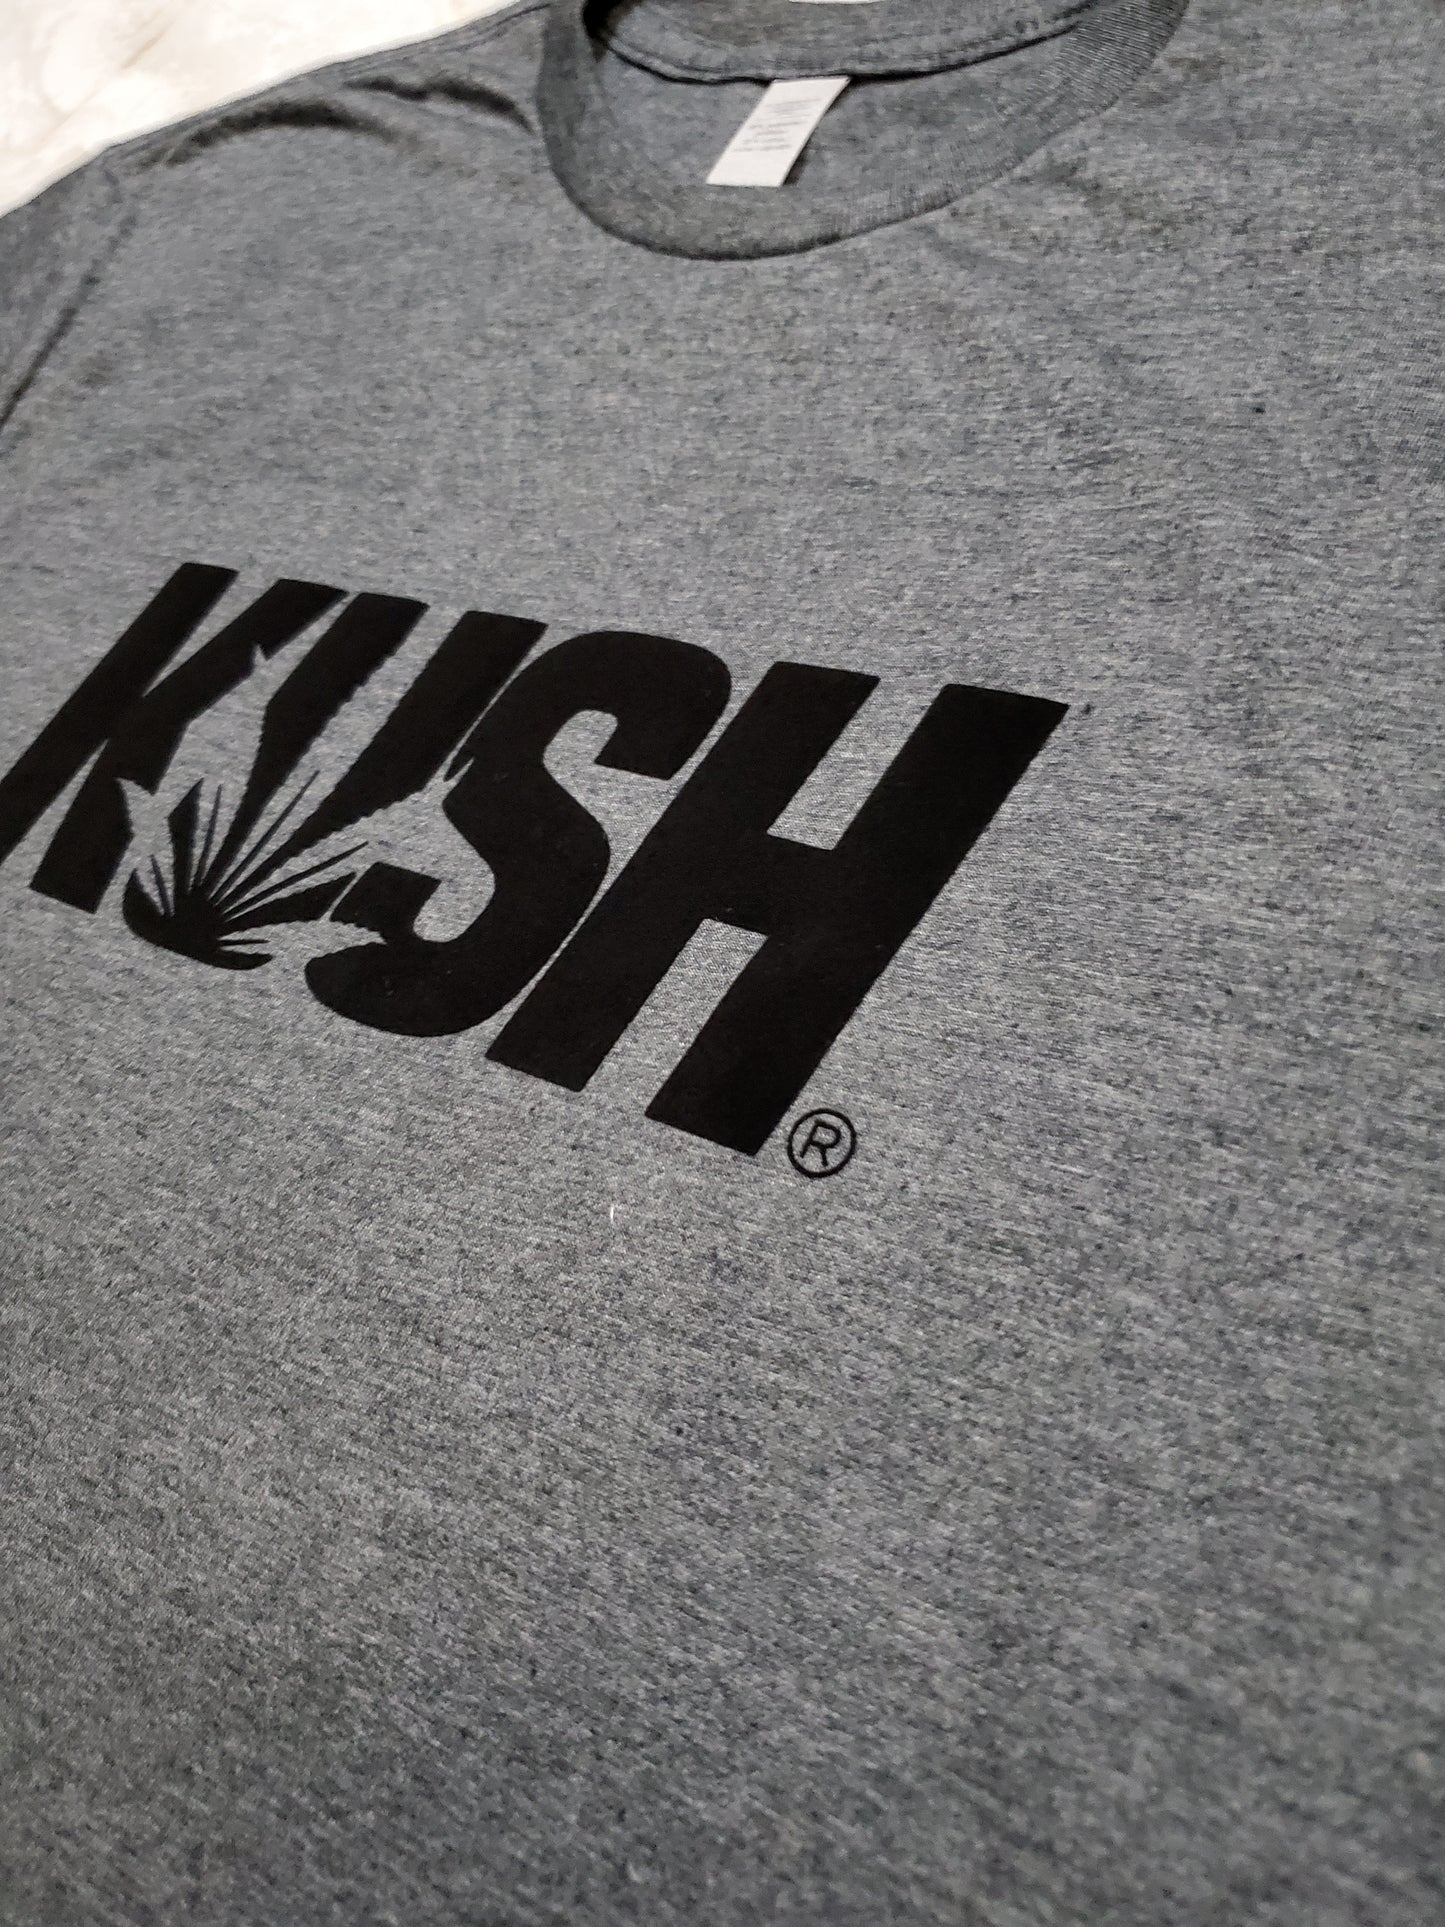 KUSH T-Shirt (Stoned) - Centre Ave Clothing Co.